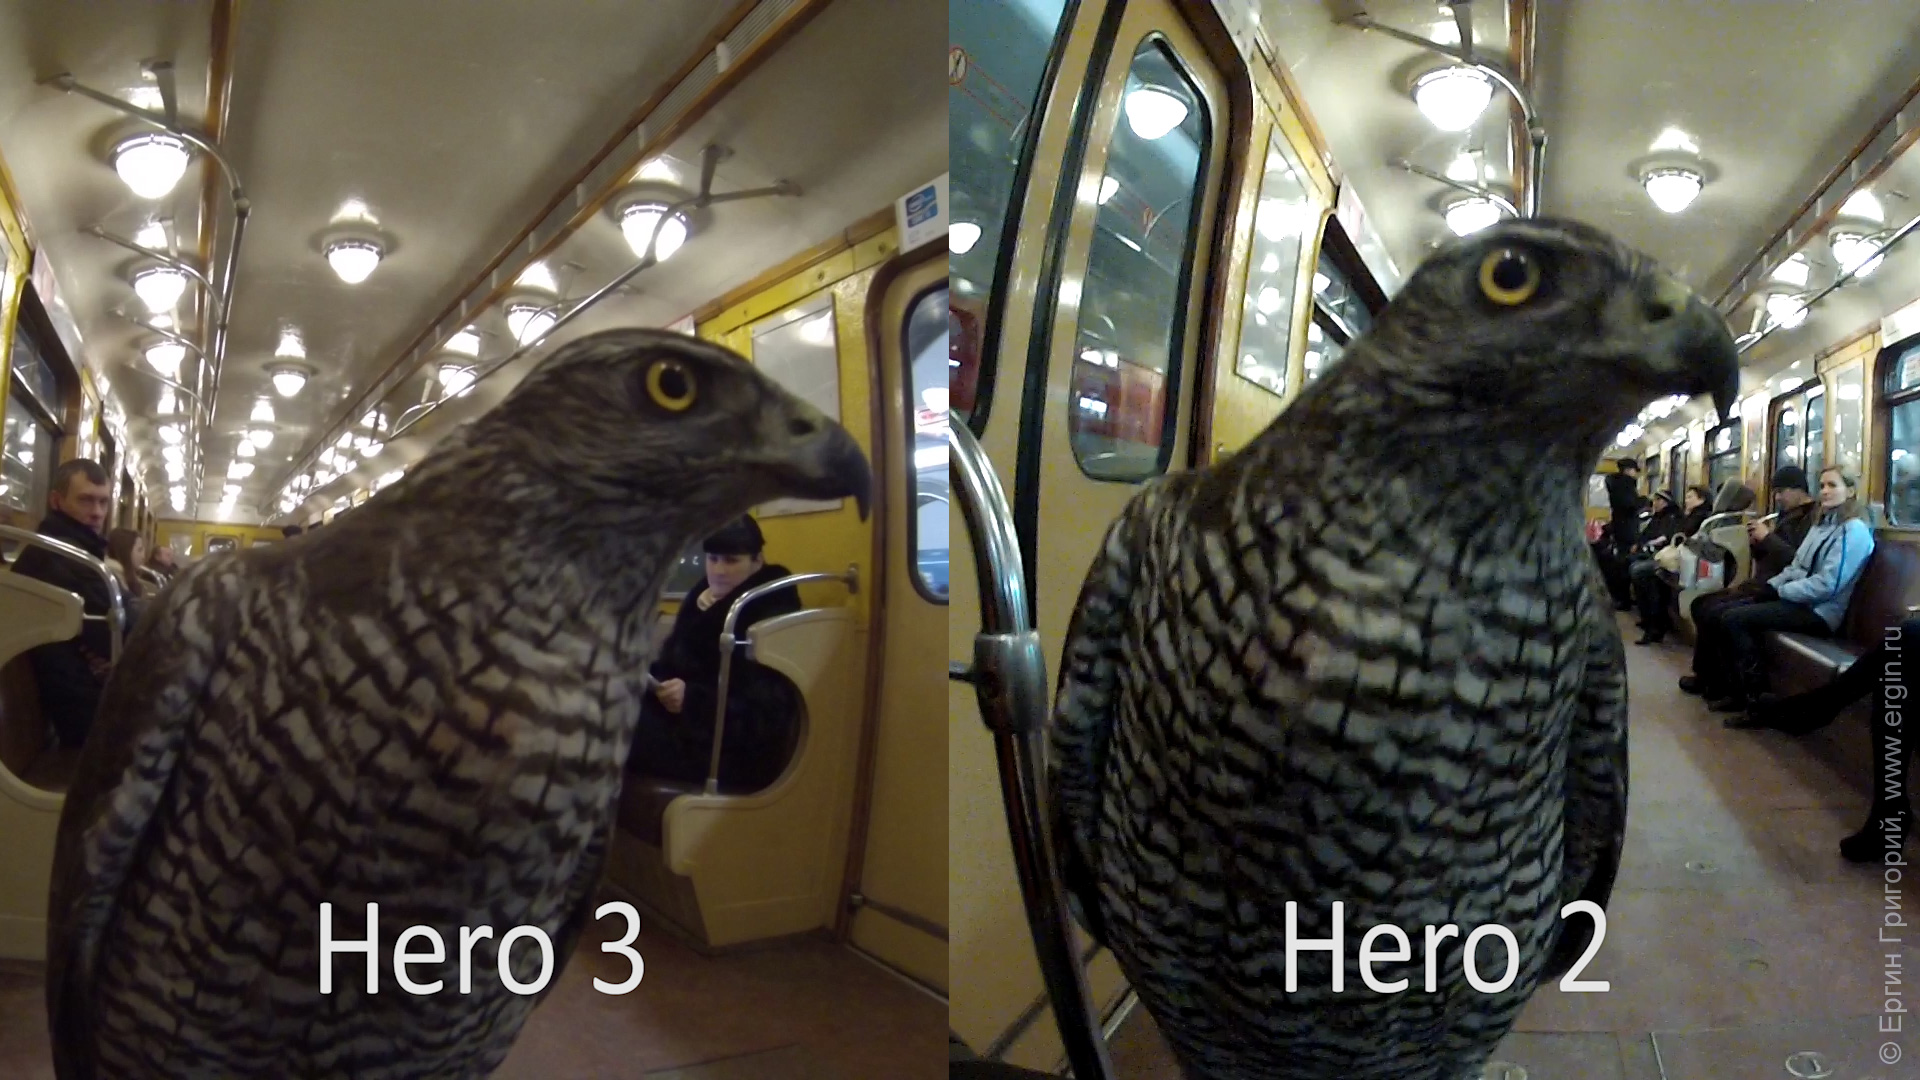 Детали оперенья у хищной птицы GoPro Hero 3 меньше шумов, чем у Hero 2